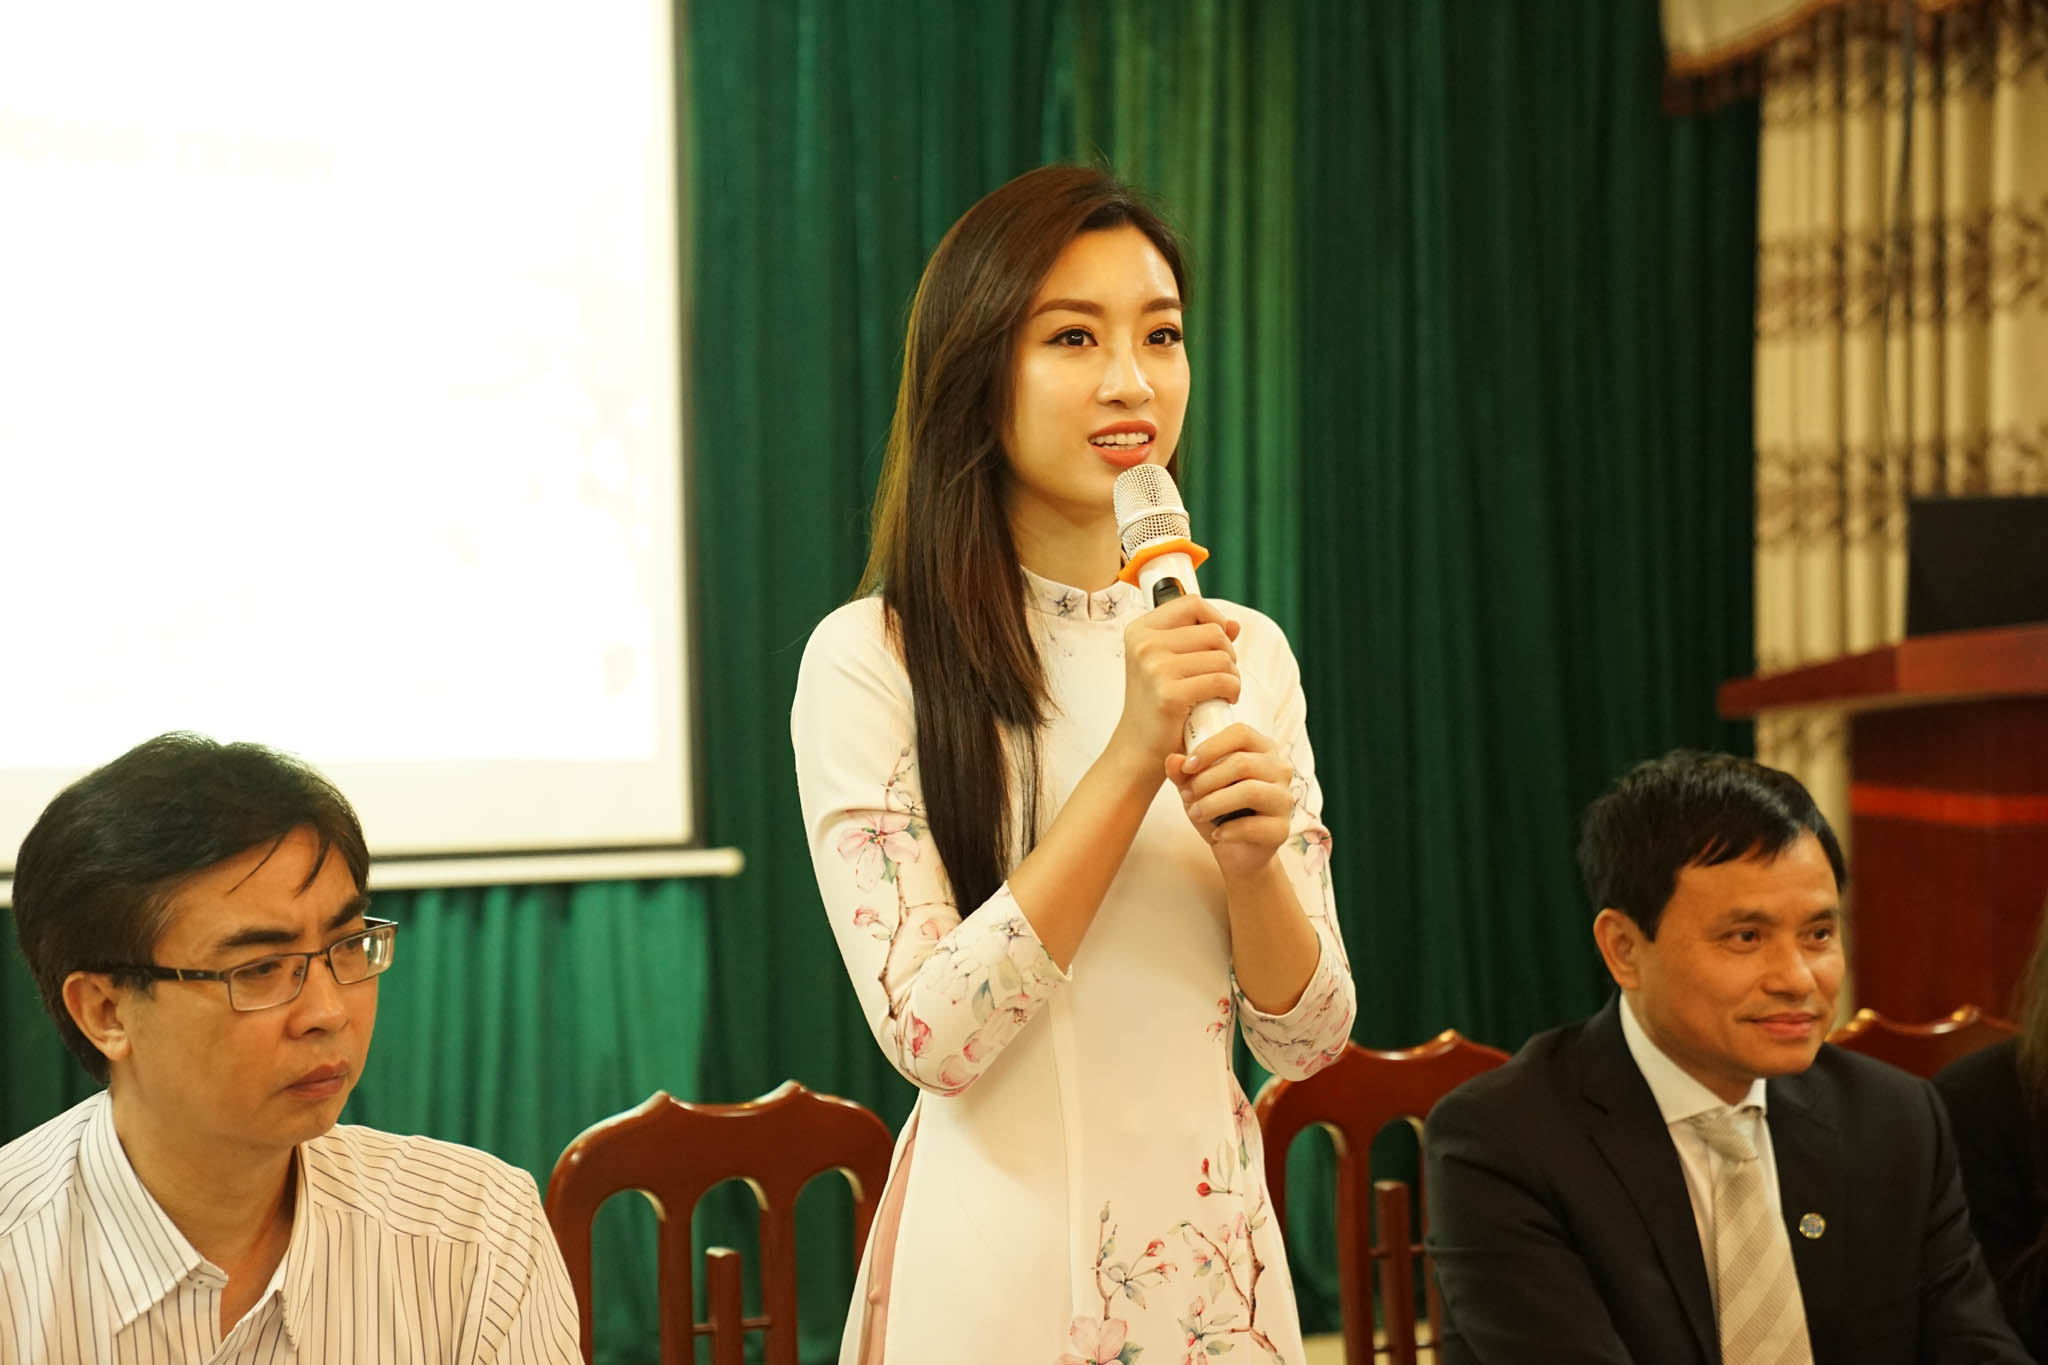 Hoa hậu Đỗ Mỹ Linh tham gia bảo vệ môi trường và thiện nguyện tại xã Hương Sơn, Mỹ Đức, Hà Nội